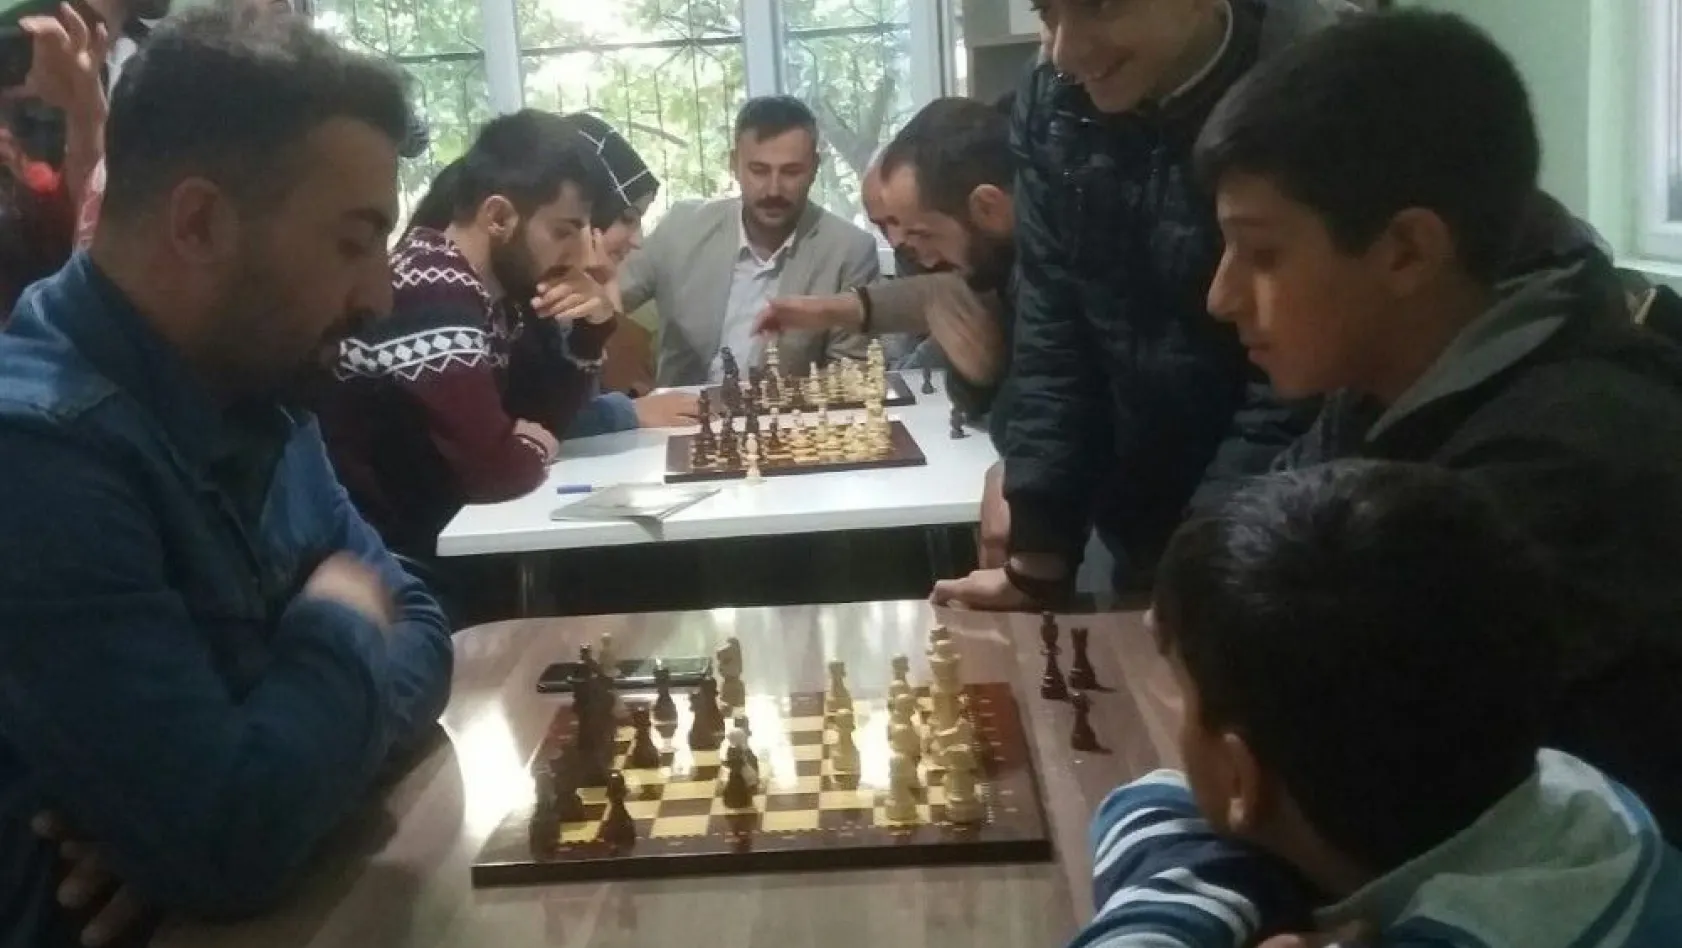 İşitme engelliler, satranç oynadı
